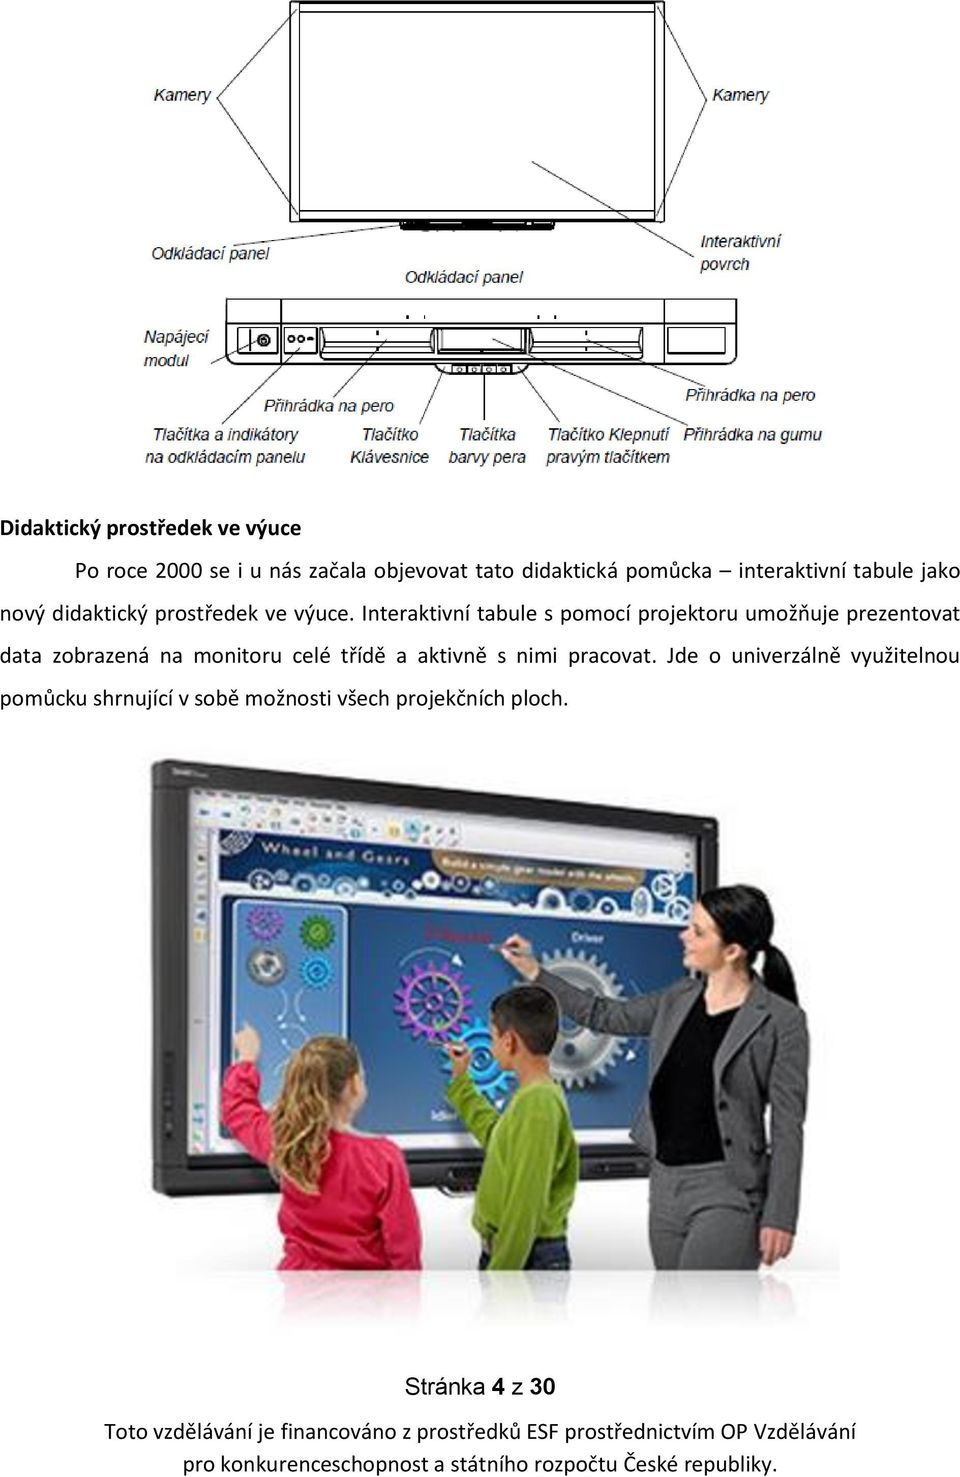 Interaktivní tabule s pomocí projektoru umožňuje prezentovat data zobrazená na monitoru celé